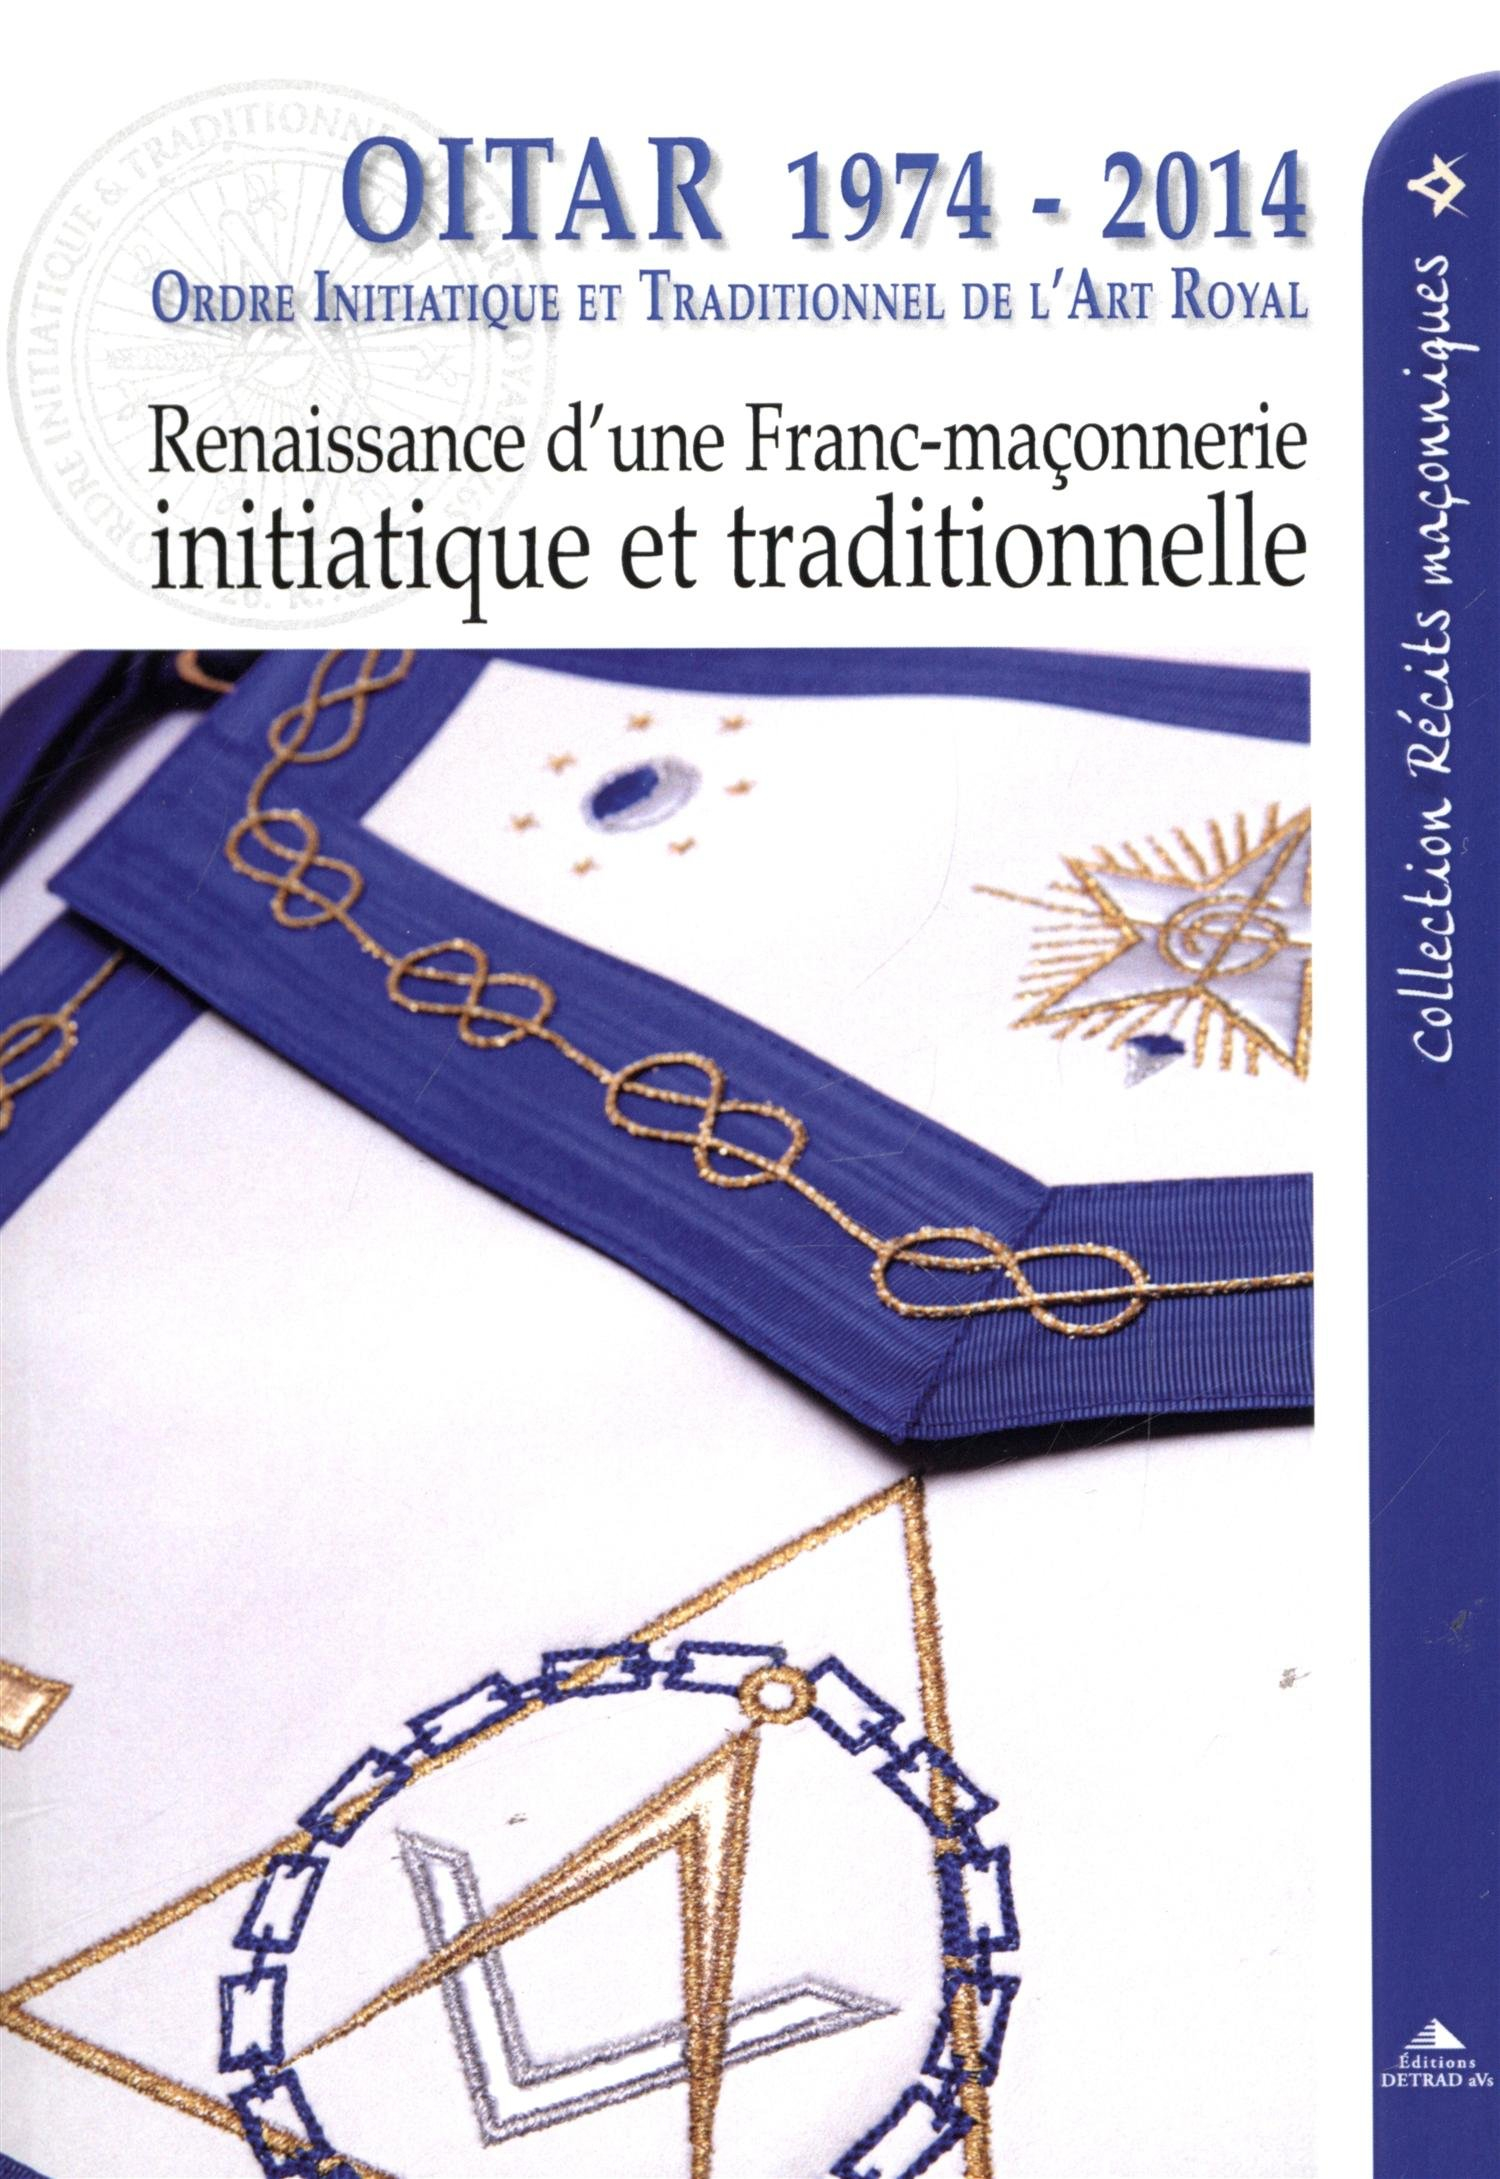 OITAR 1974-2014 : Ordre initiatique et traditionnel de l'art royal : renaissance d'une franc-maçonne